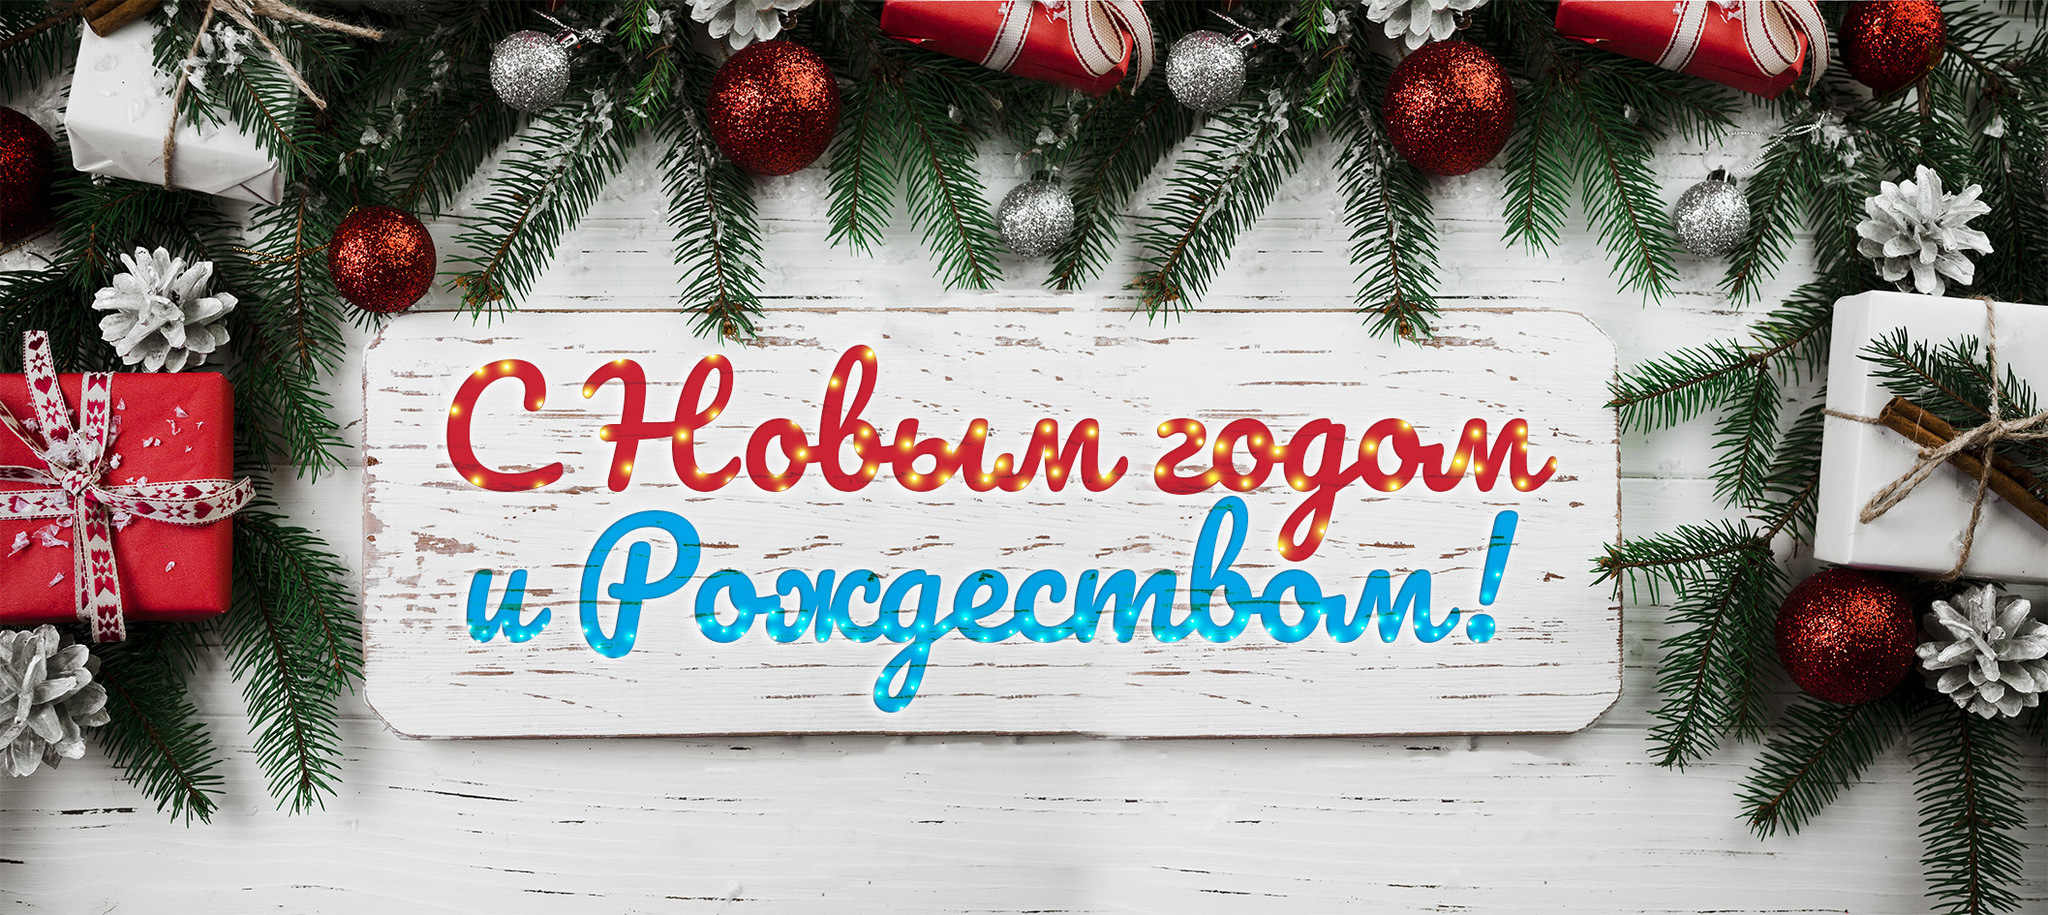 От всей души поздравляем вас с  наступающим Новым годом и Рождеством Христовым!.